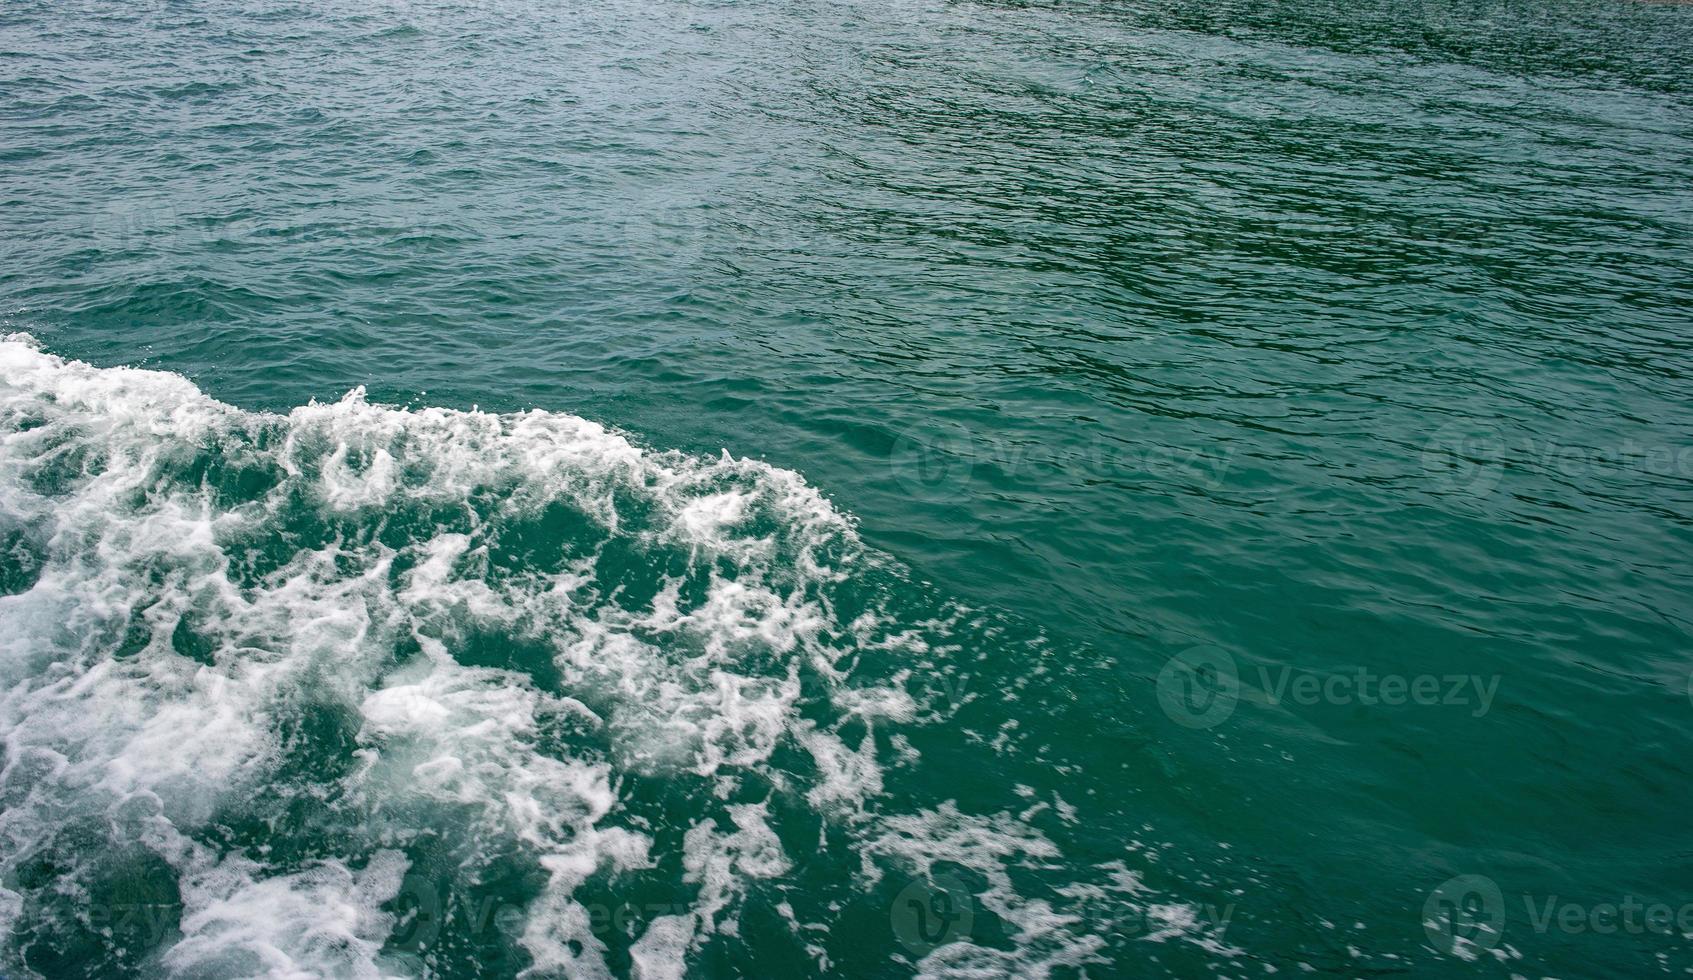 zeegolven raken de prachtige smaragdgroene zeeboot. foto